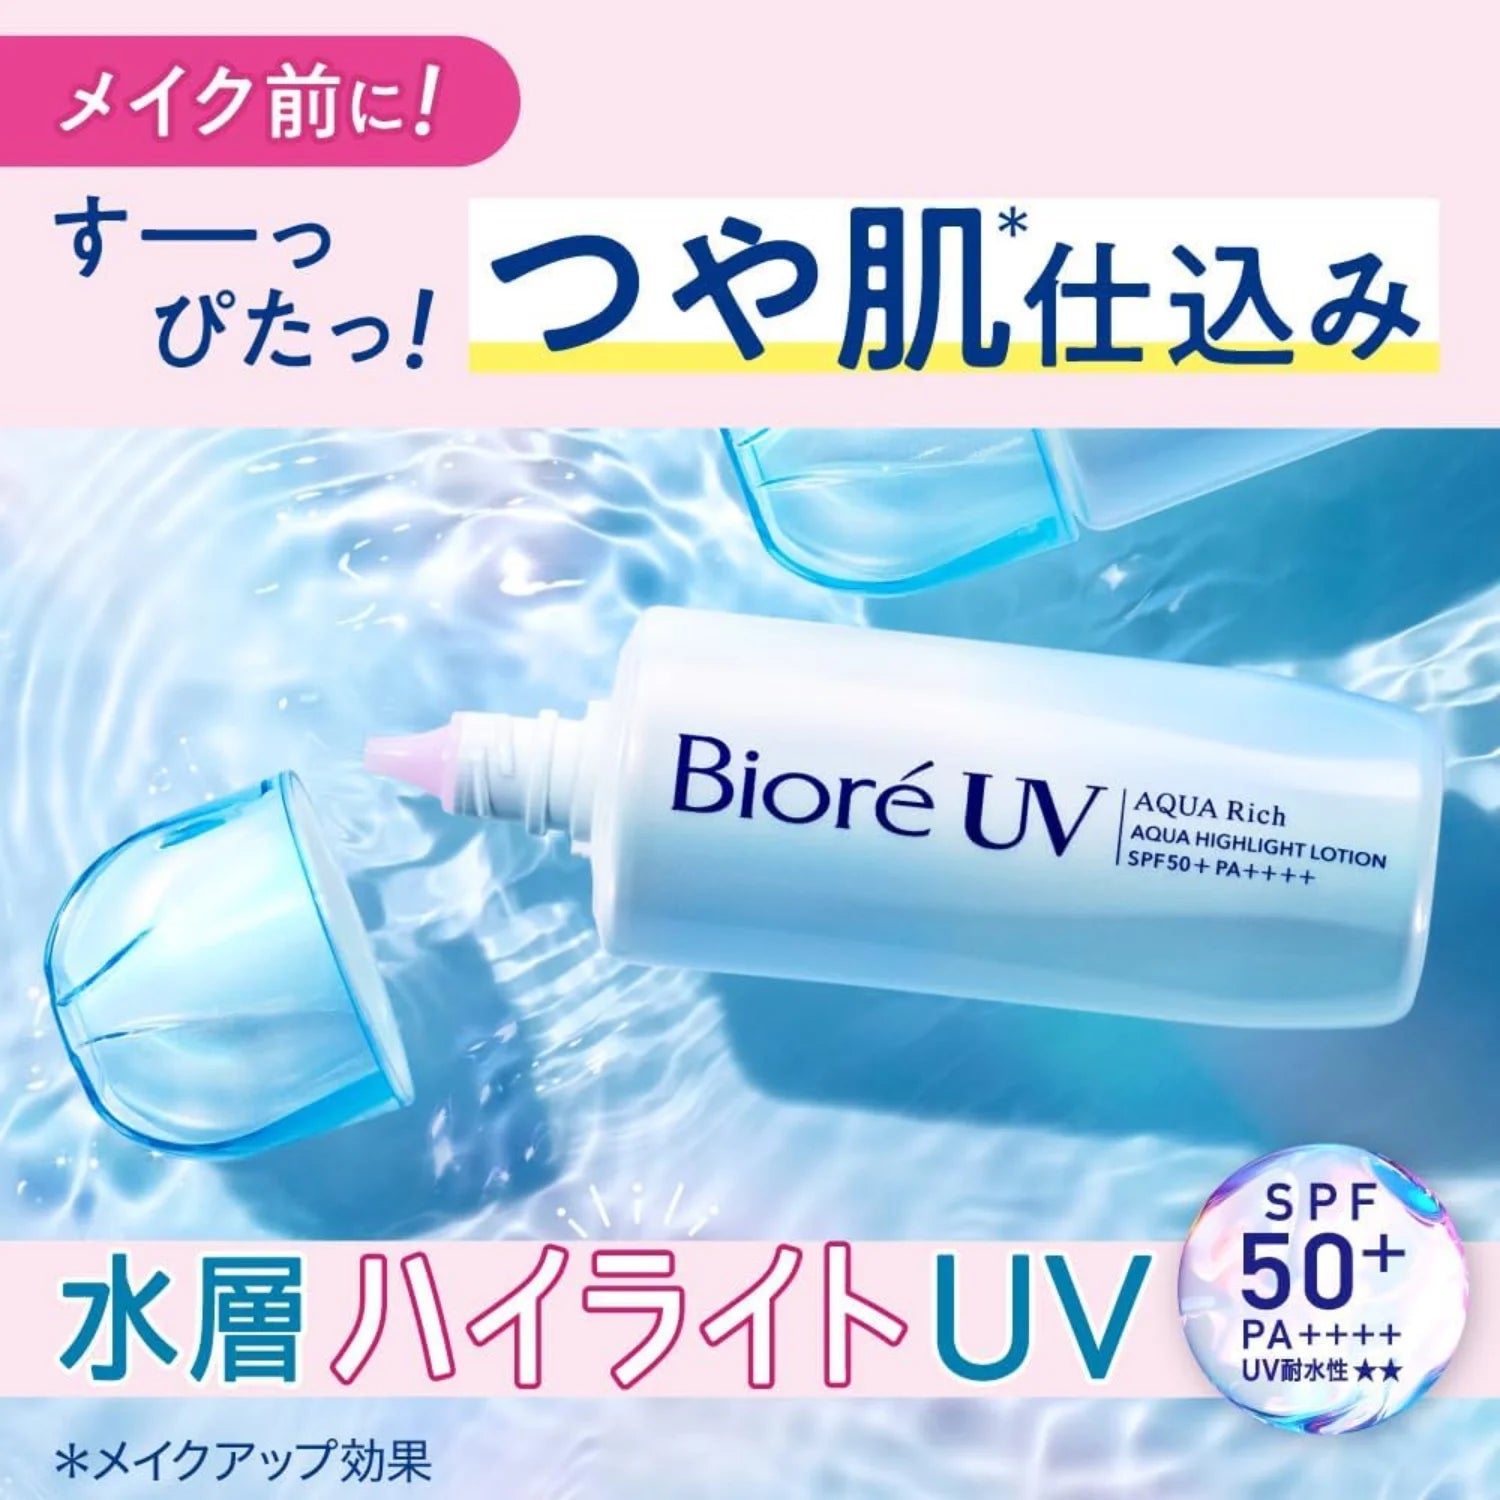 Biore UV Aqua Rich Aqua Highlight Lotion SPF50+ PA++++ 70ml